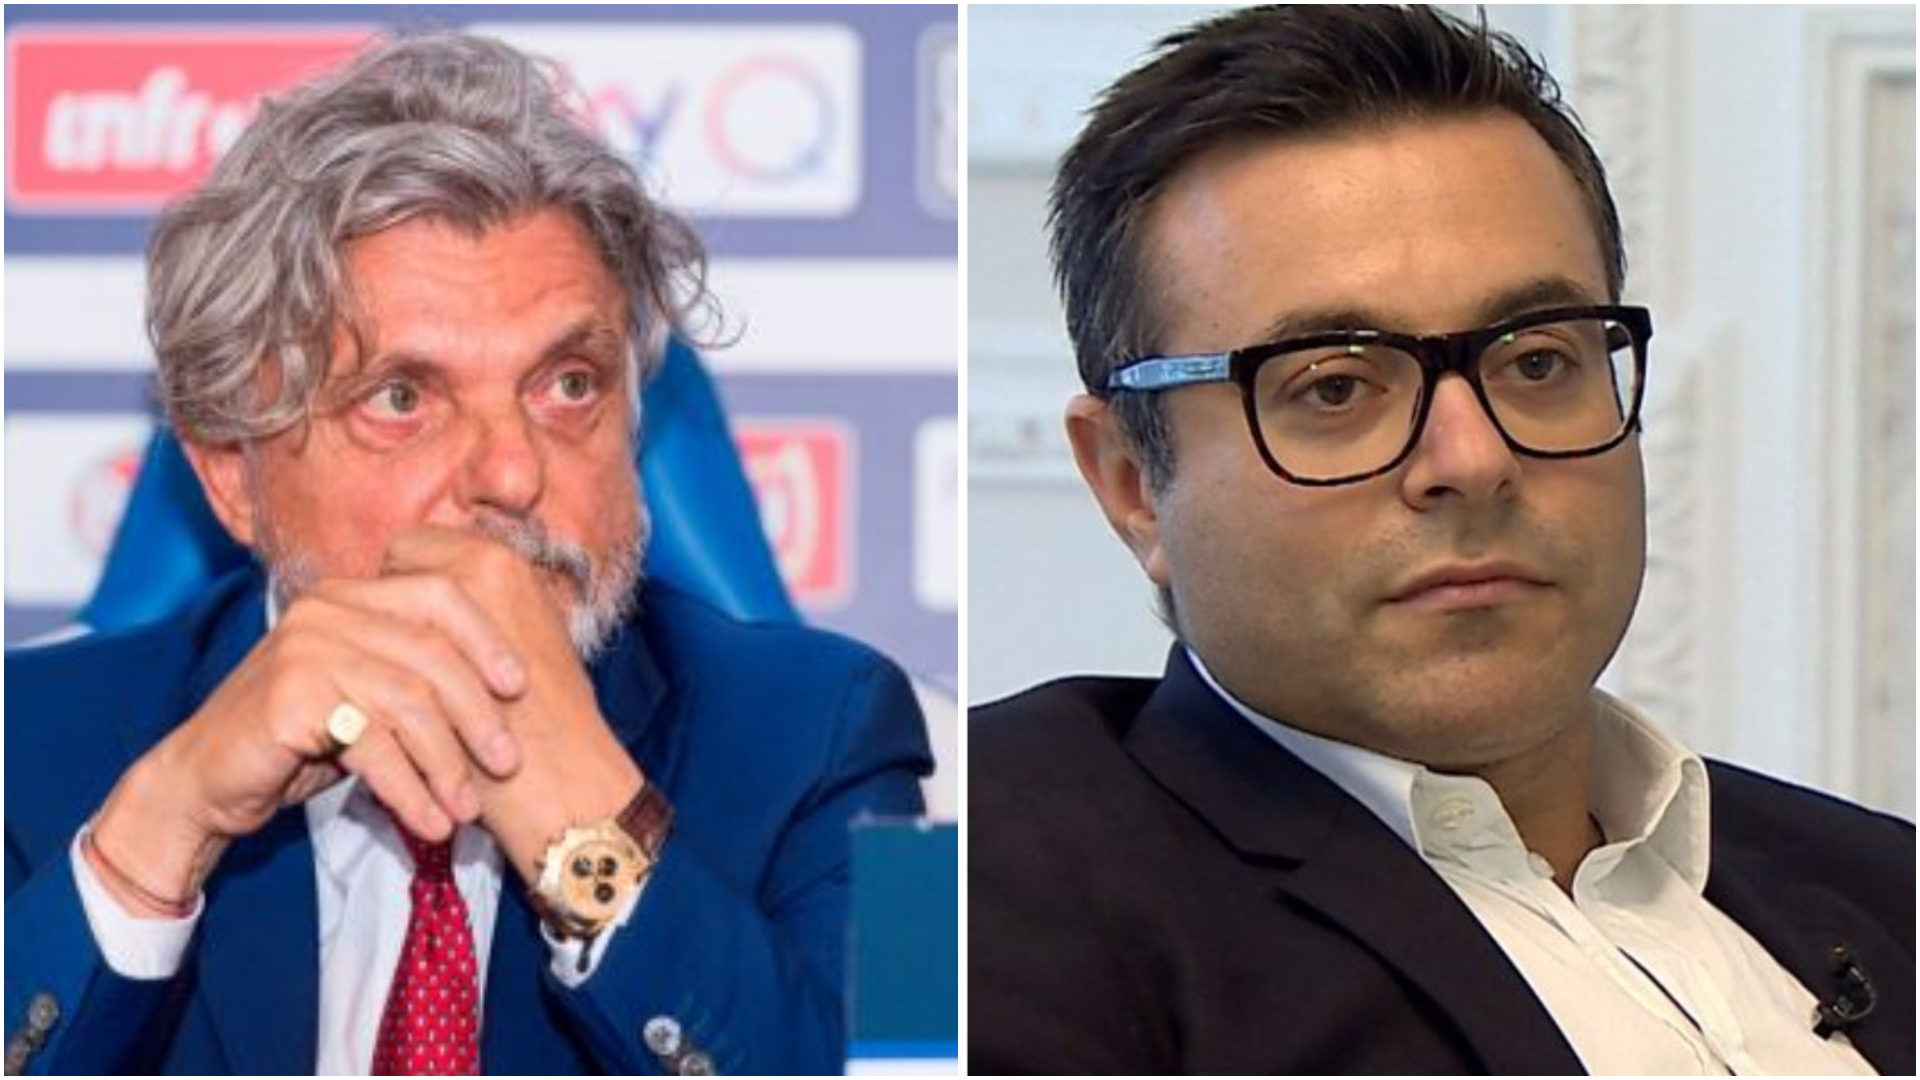 Sampdoria, Radrizzani e Manfredi continuano a trattare con Ferrero